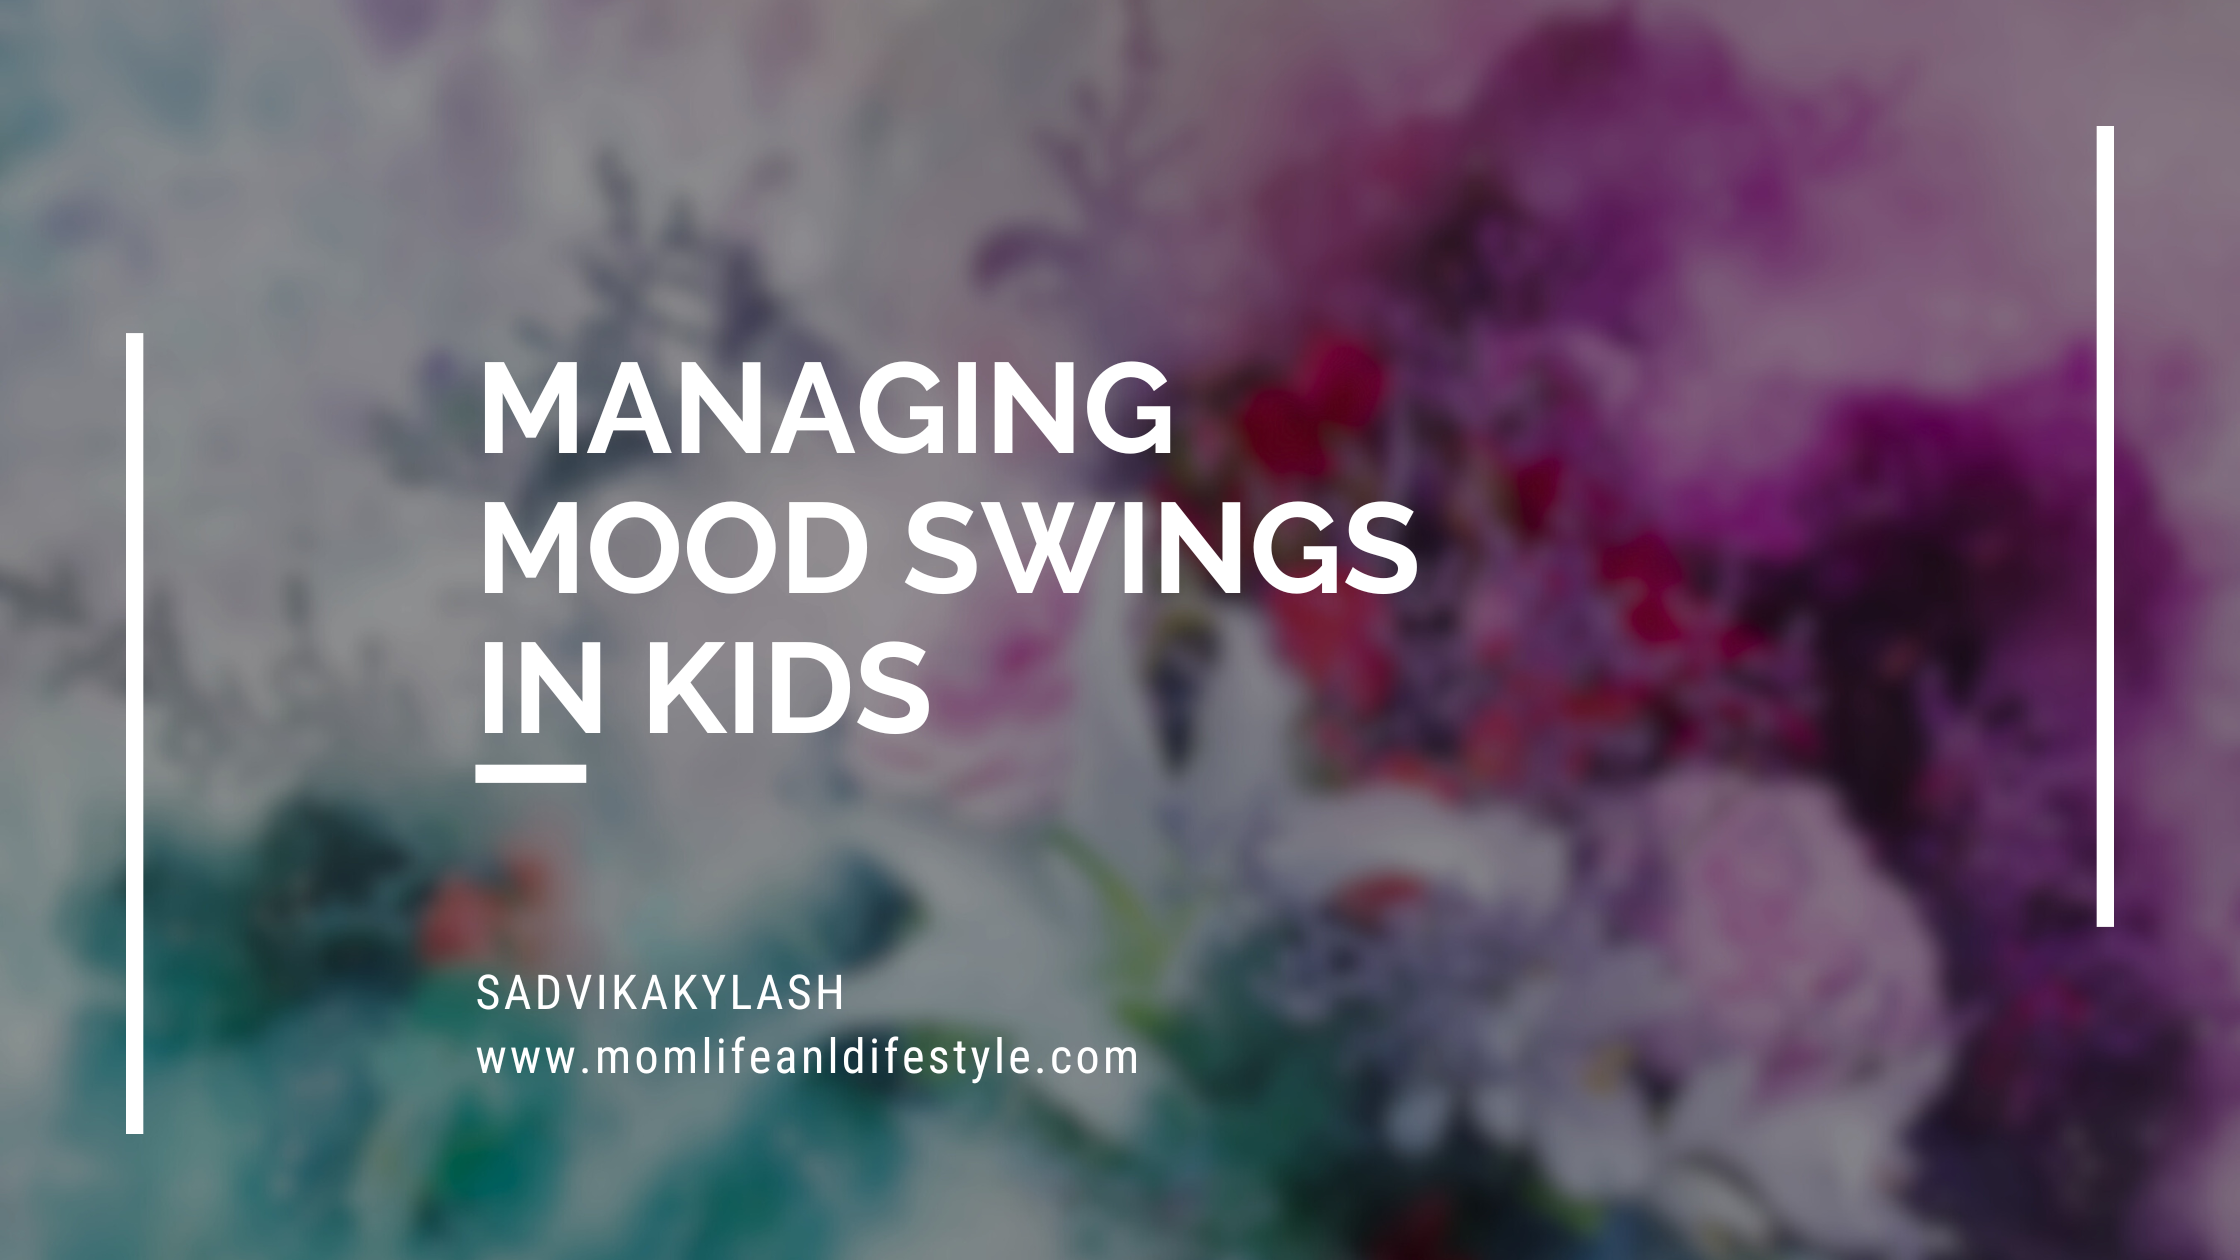 Managing Mood swings in kids